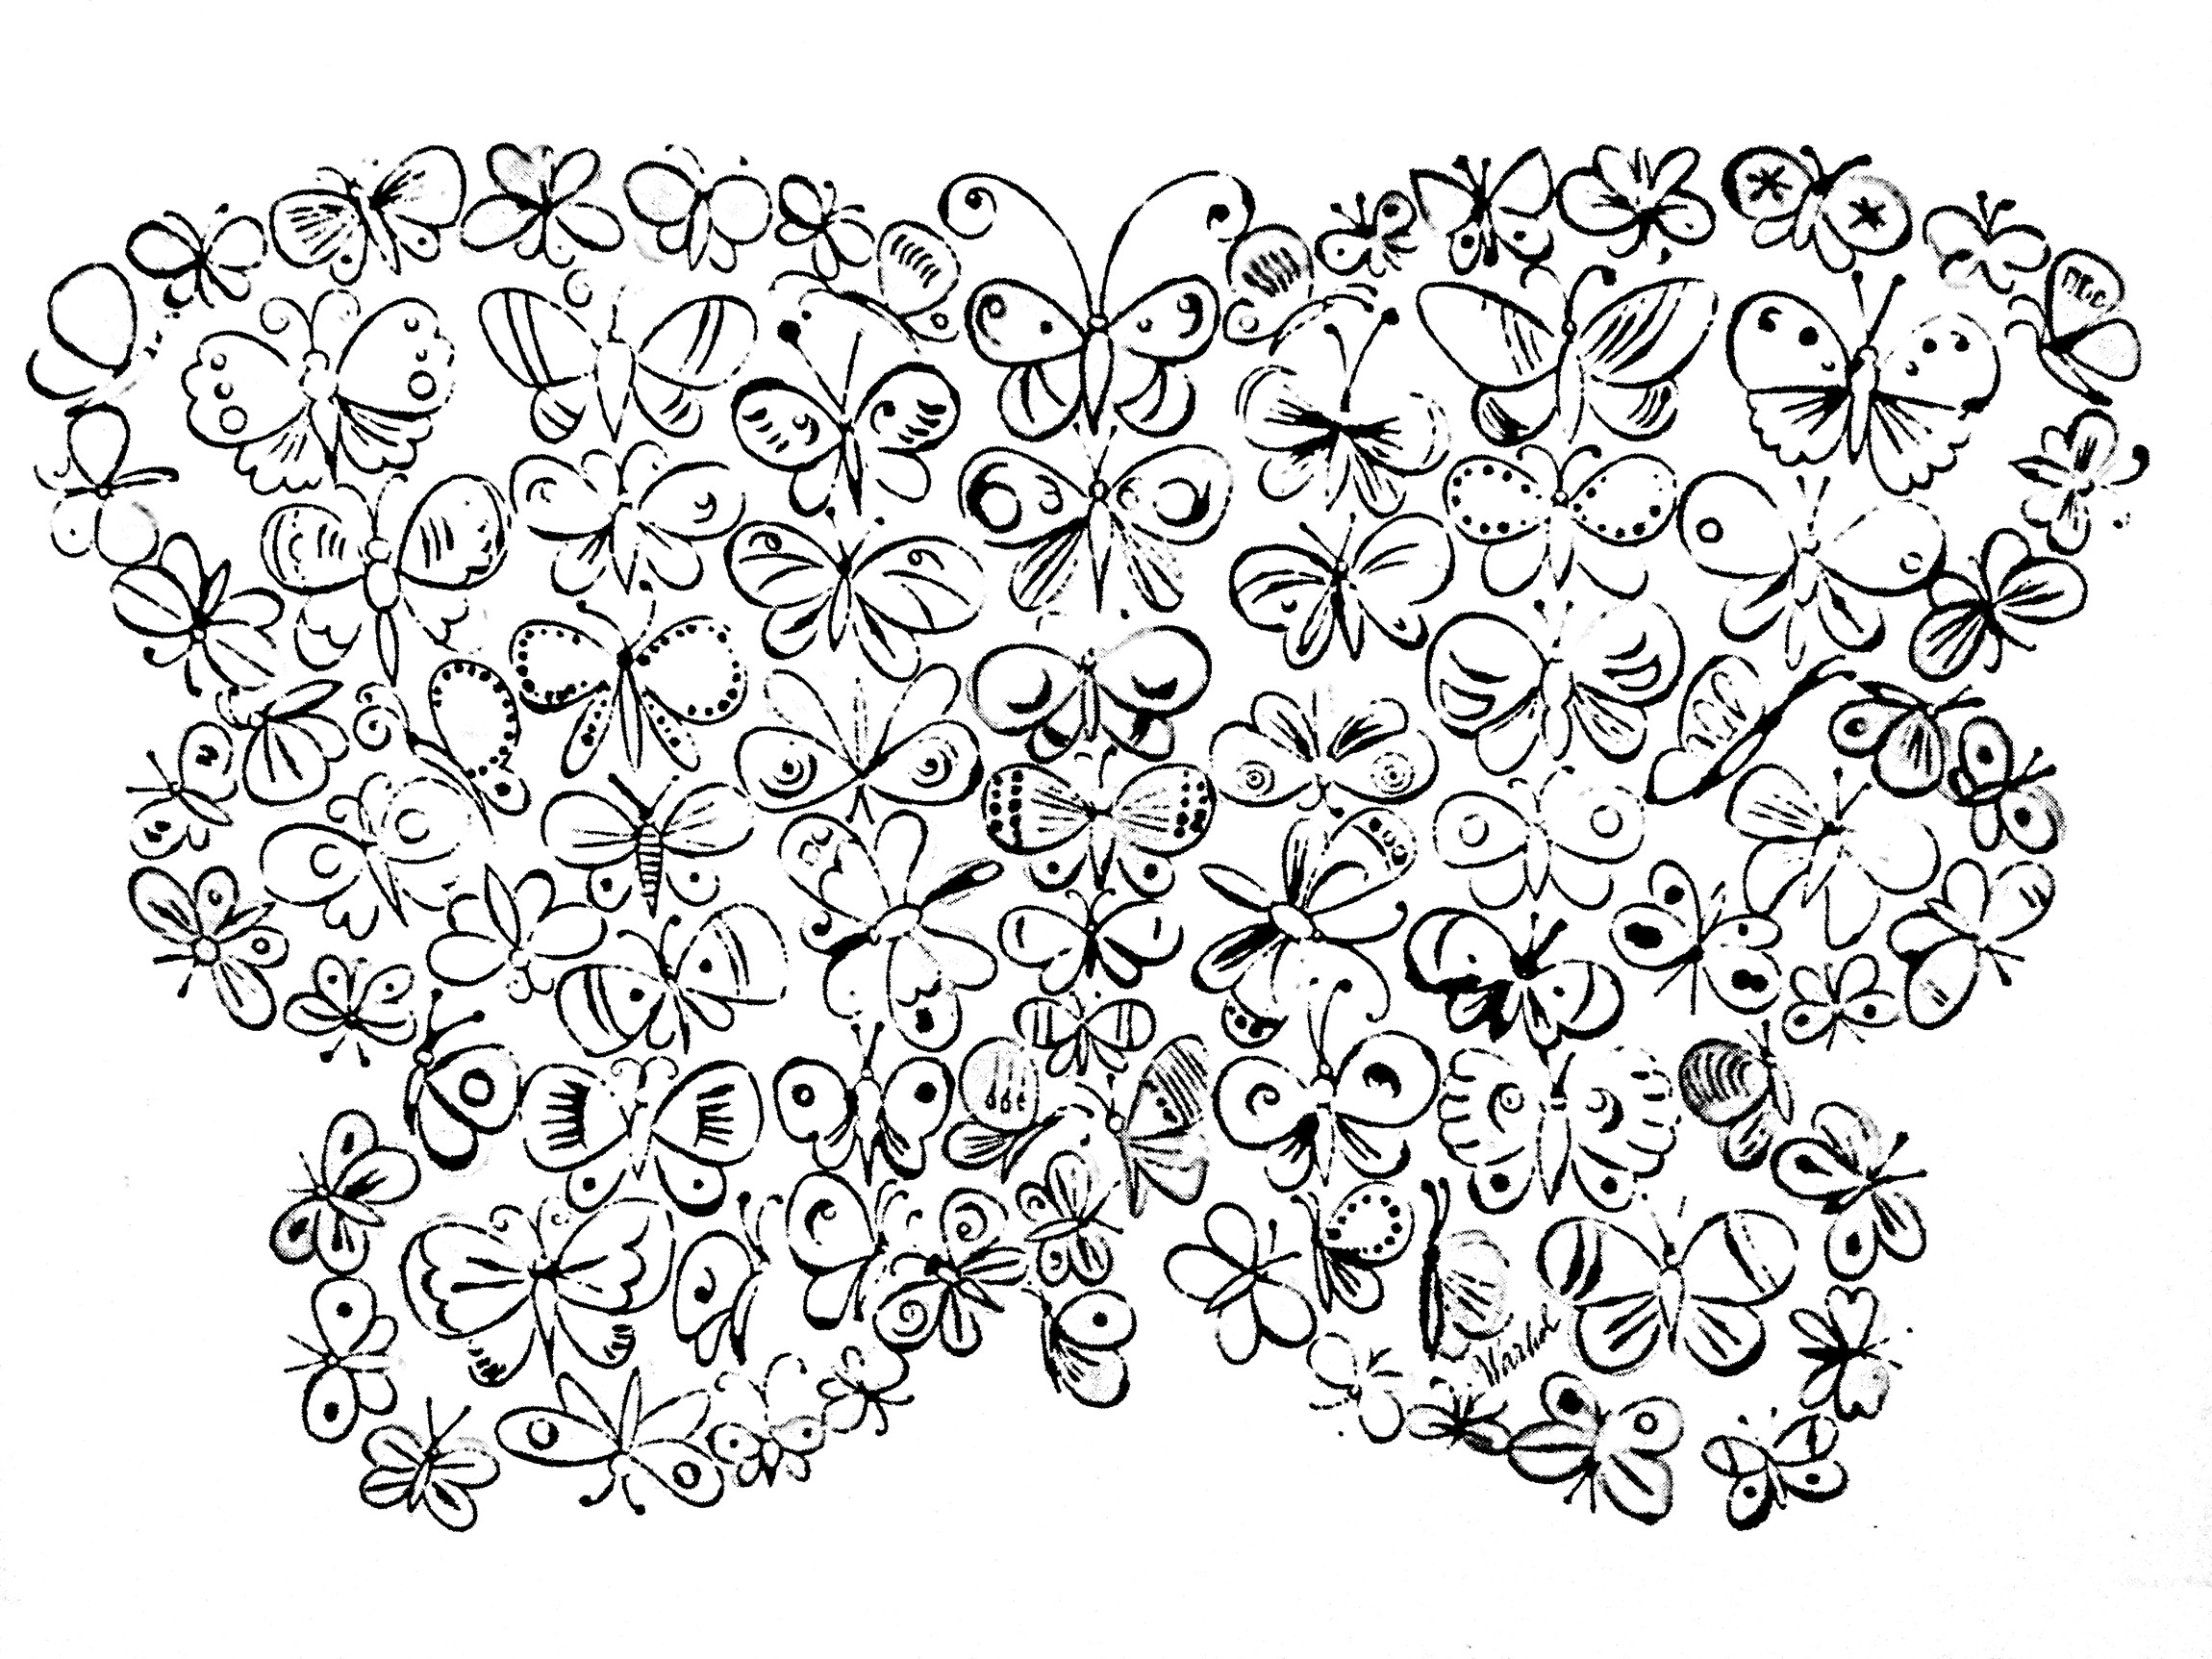 Dessin de papillons par Andy Warhol